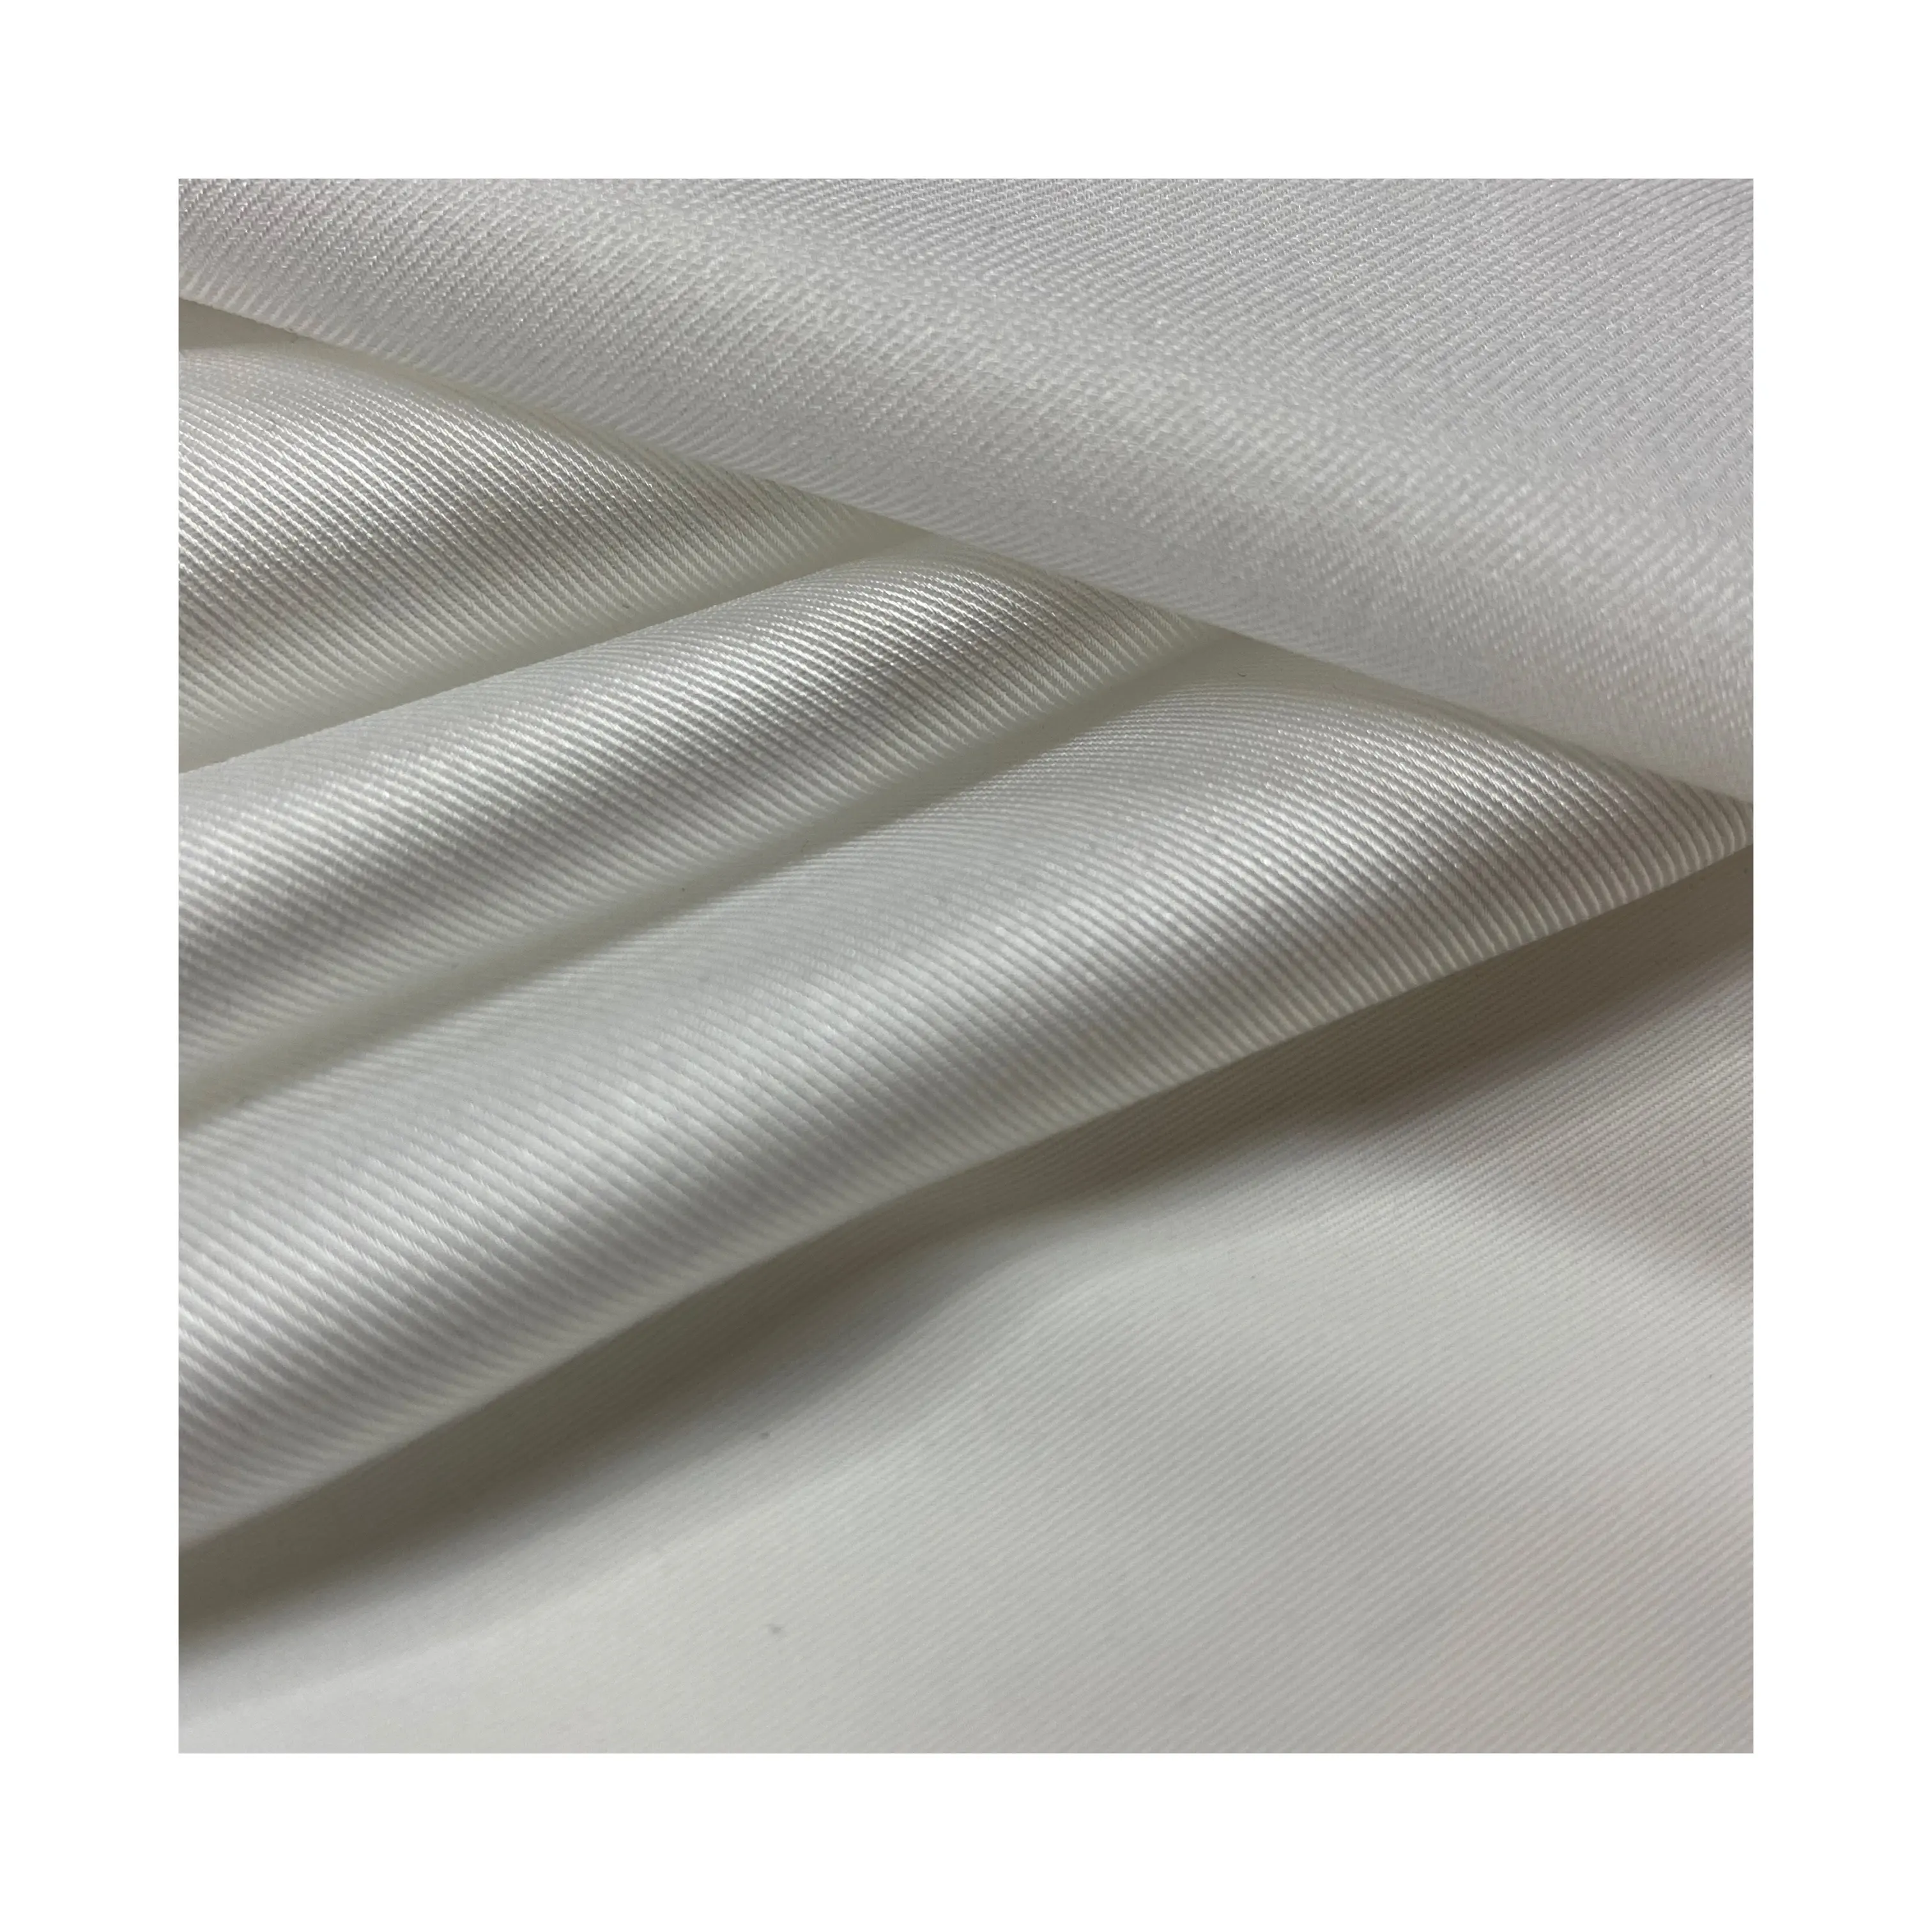 Plus récent processus de haute qualité 100% polyester coton sergé tissu en mousseline de soie pour les vêtements